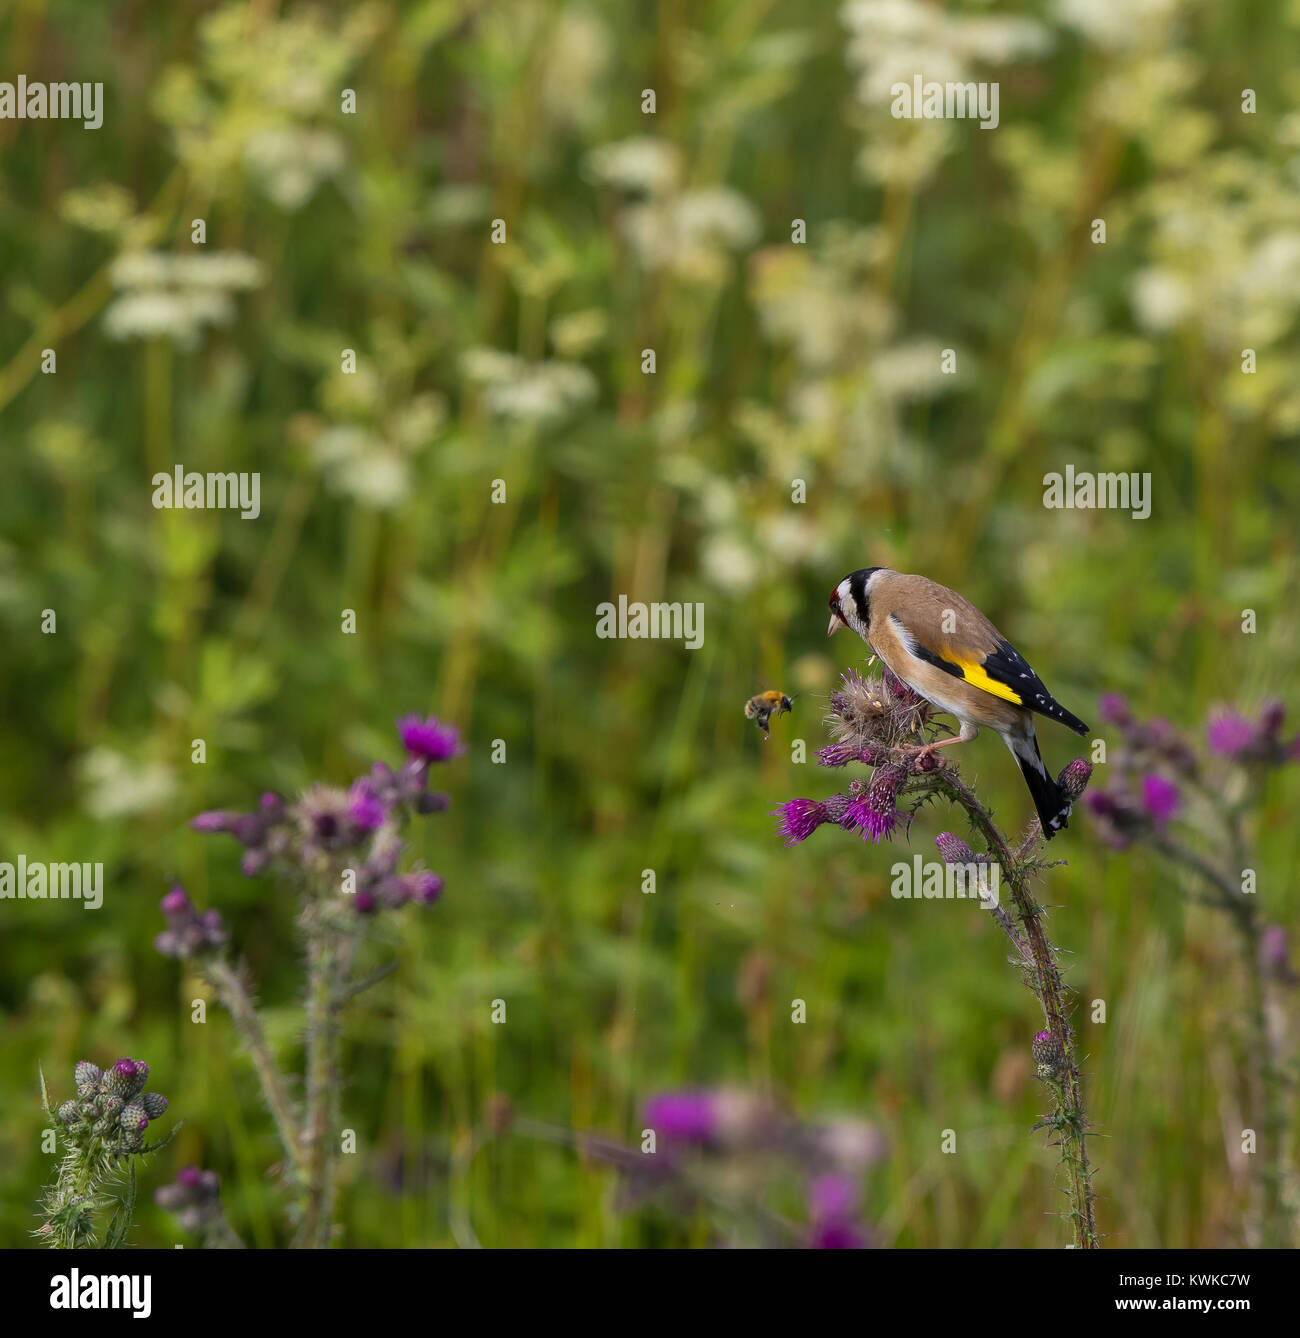 Primo piano dell'uccello del Regno Unito (Carduelis carduelis) arroccato su una pianta di cardo comune in estate, guardando un'ape che si sorvolava a mezz'aria. Foto Stock